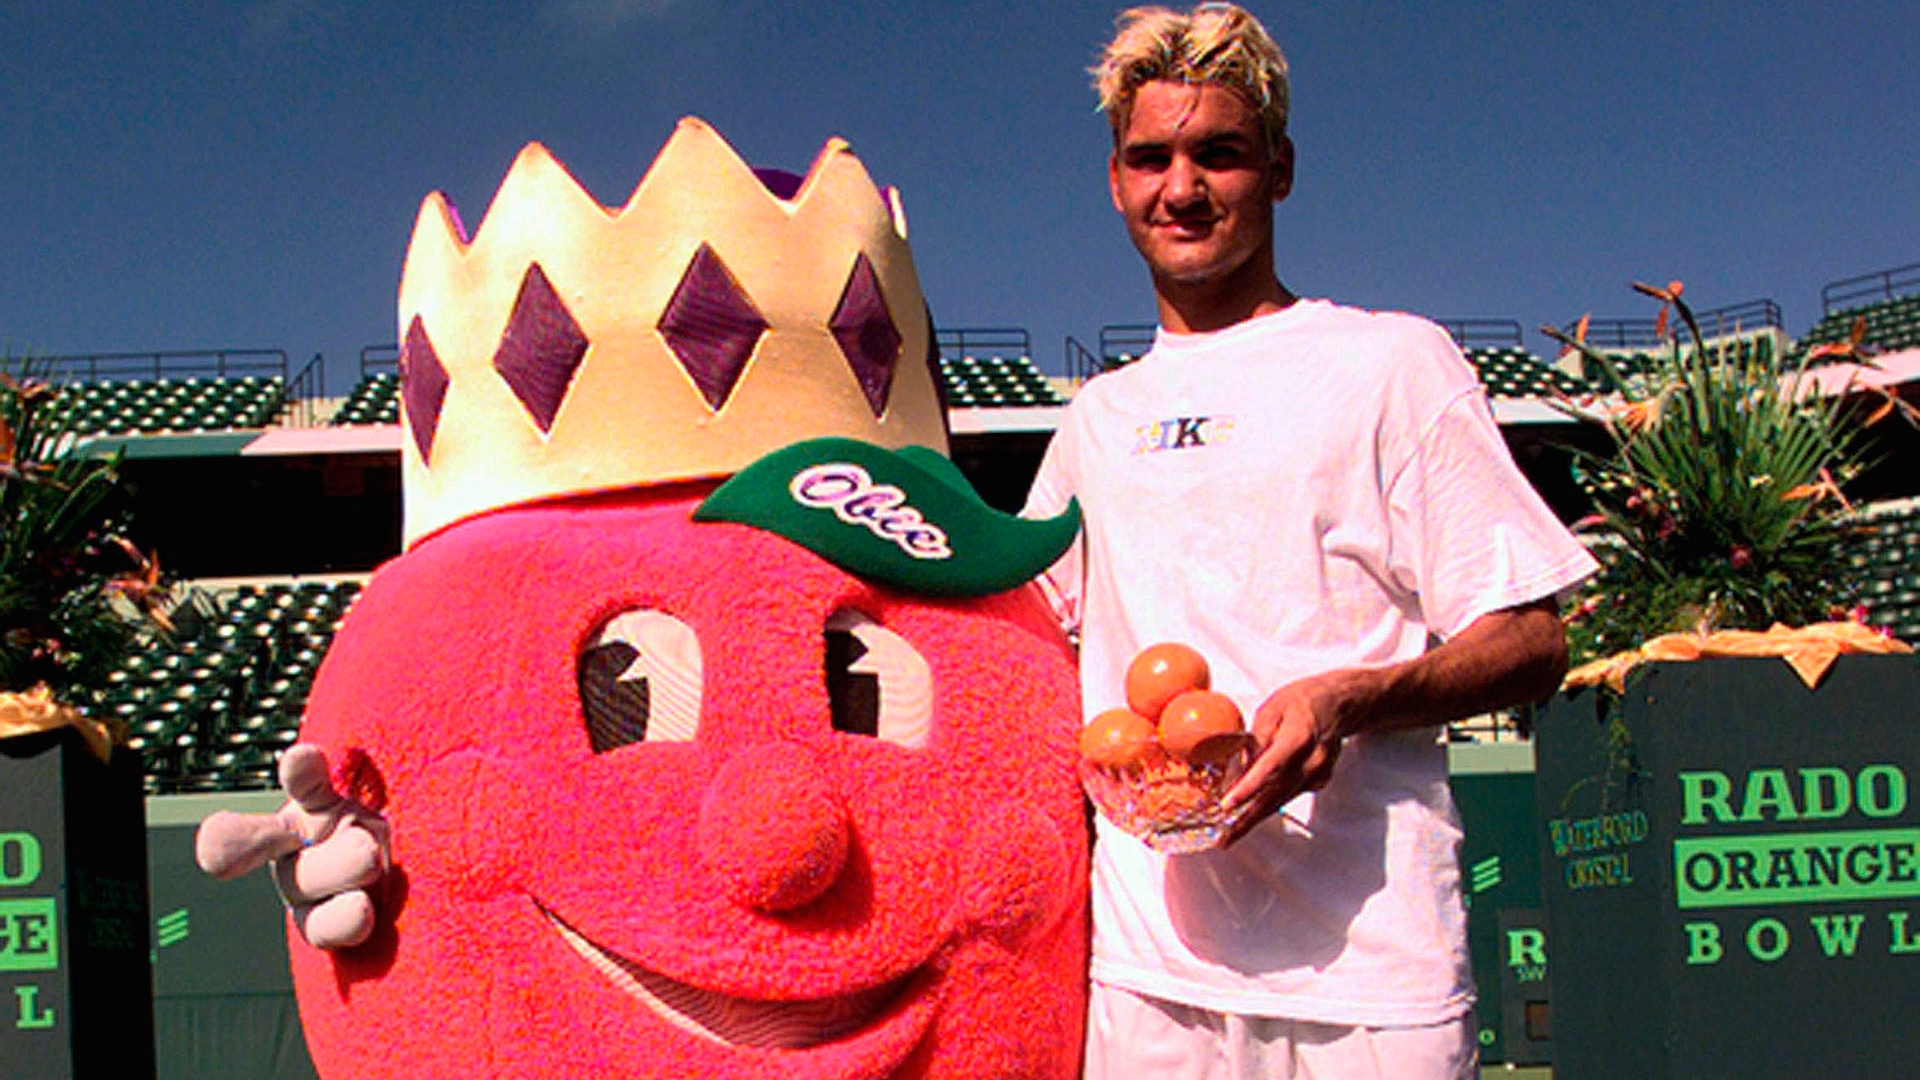 El Roger Federer menos conocido: un rebelde que rompía raquetas, se teñía de rubio y adoraba a Pamela Anderson